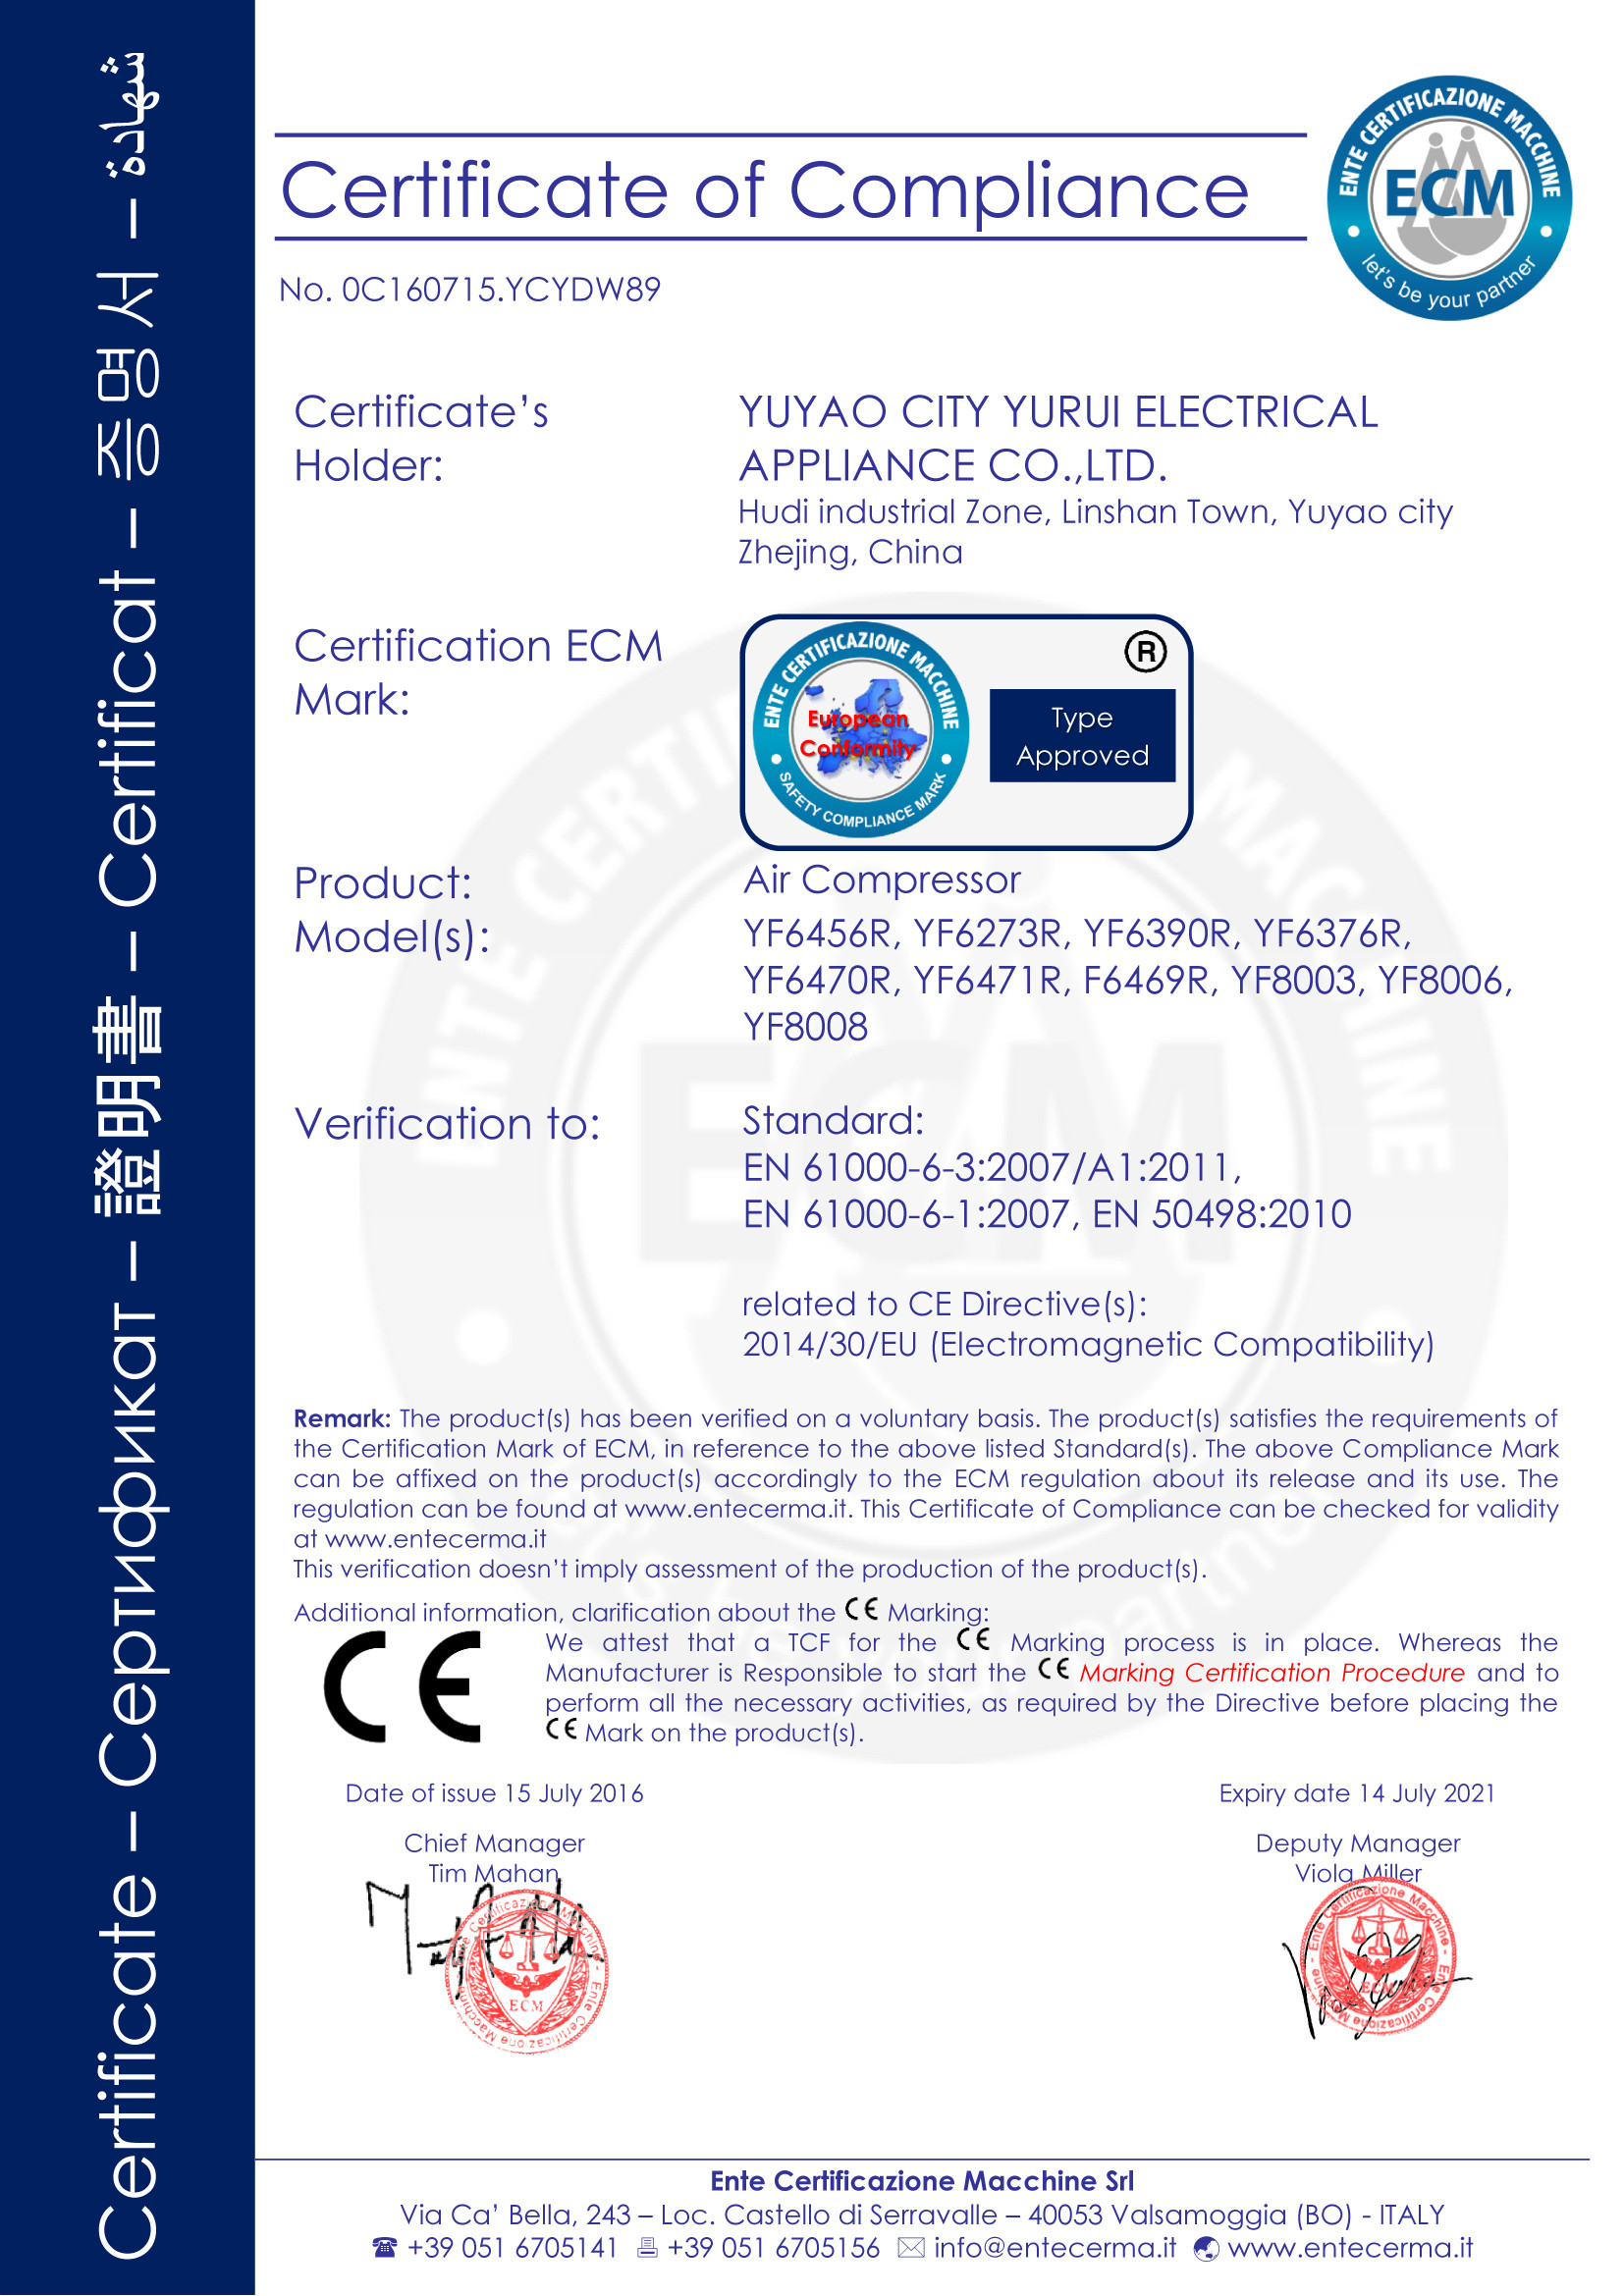 Yuyao City Yurui Electrical Appliance Co., Ltd. Certifications